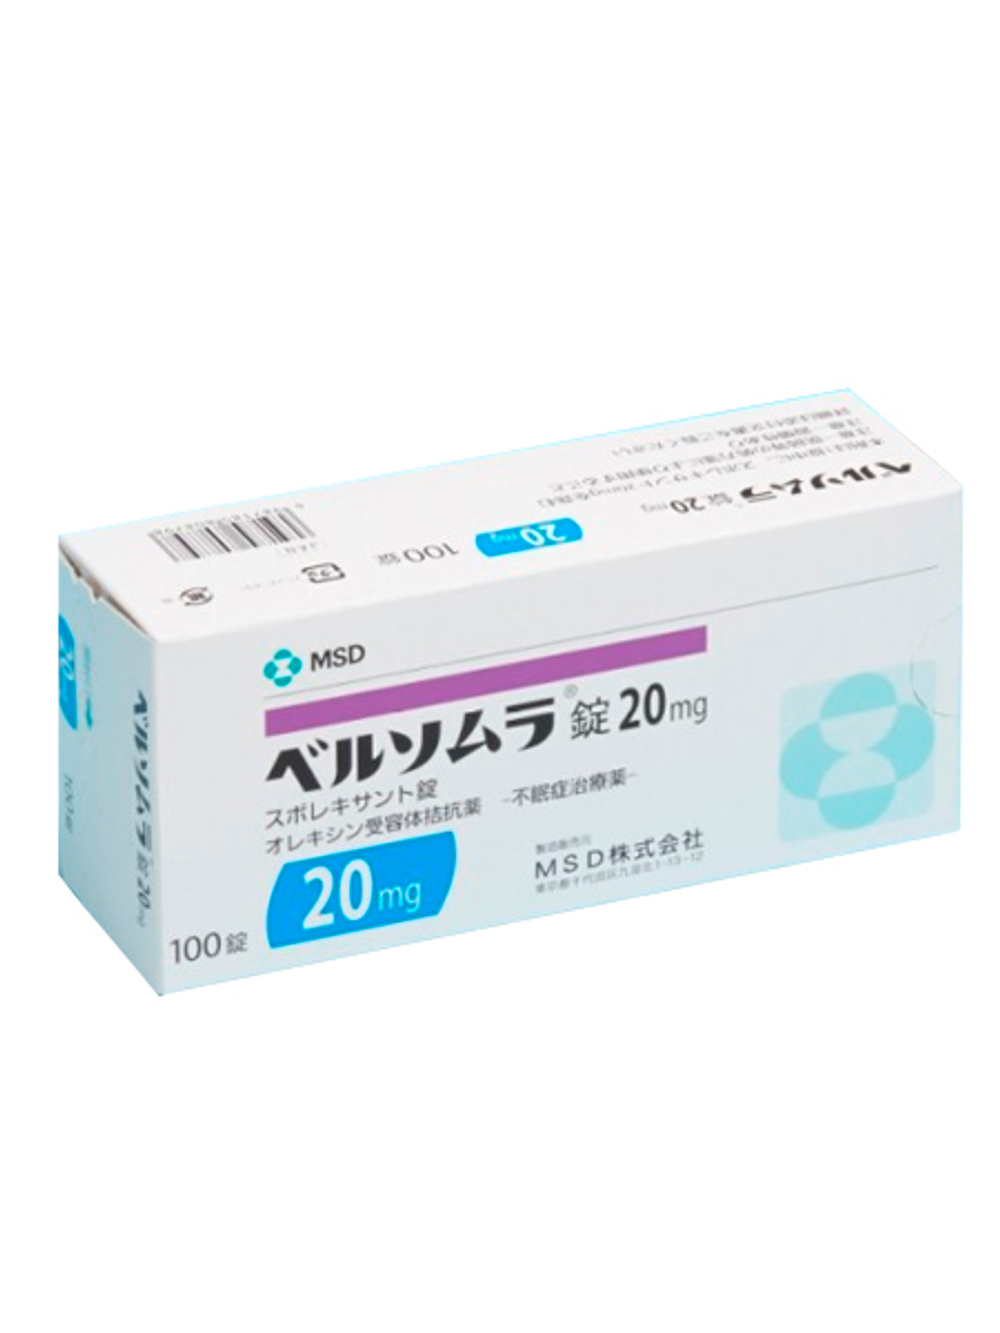 Белсомра 15 мг, 100 таблеток